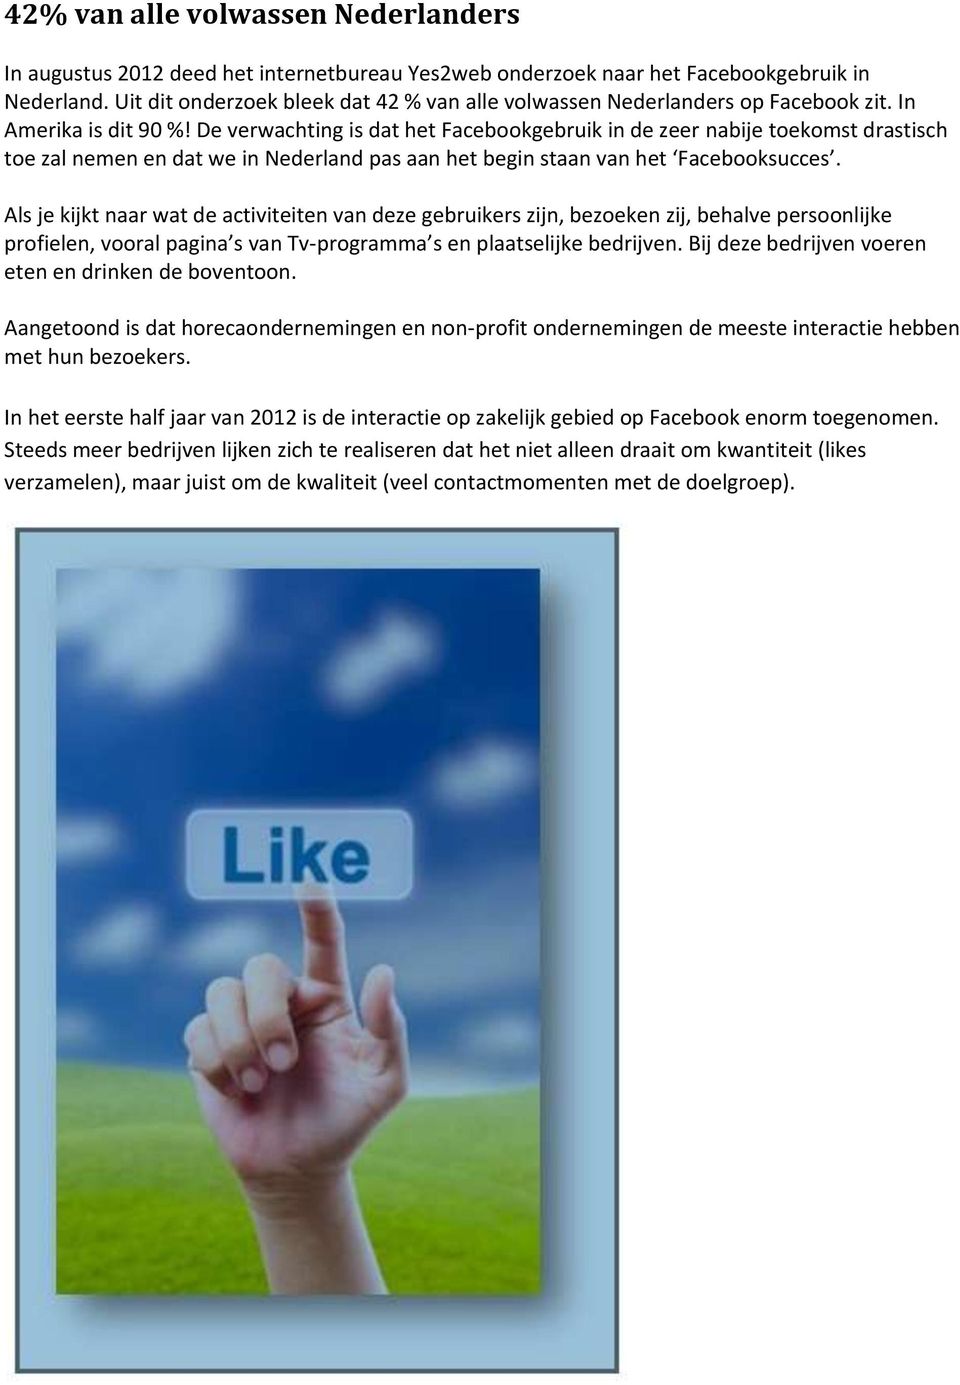 De verwachting is dat het Facebookgebruik in de zeer nabije toekomst drastisch toe zal nemen en dat we in Nederland pas aan het begin staan van het Facebooksucces.